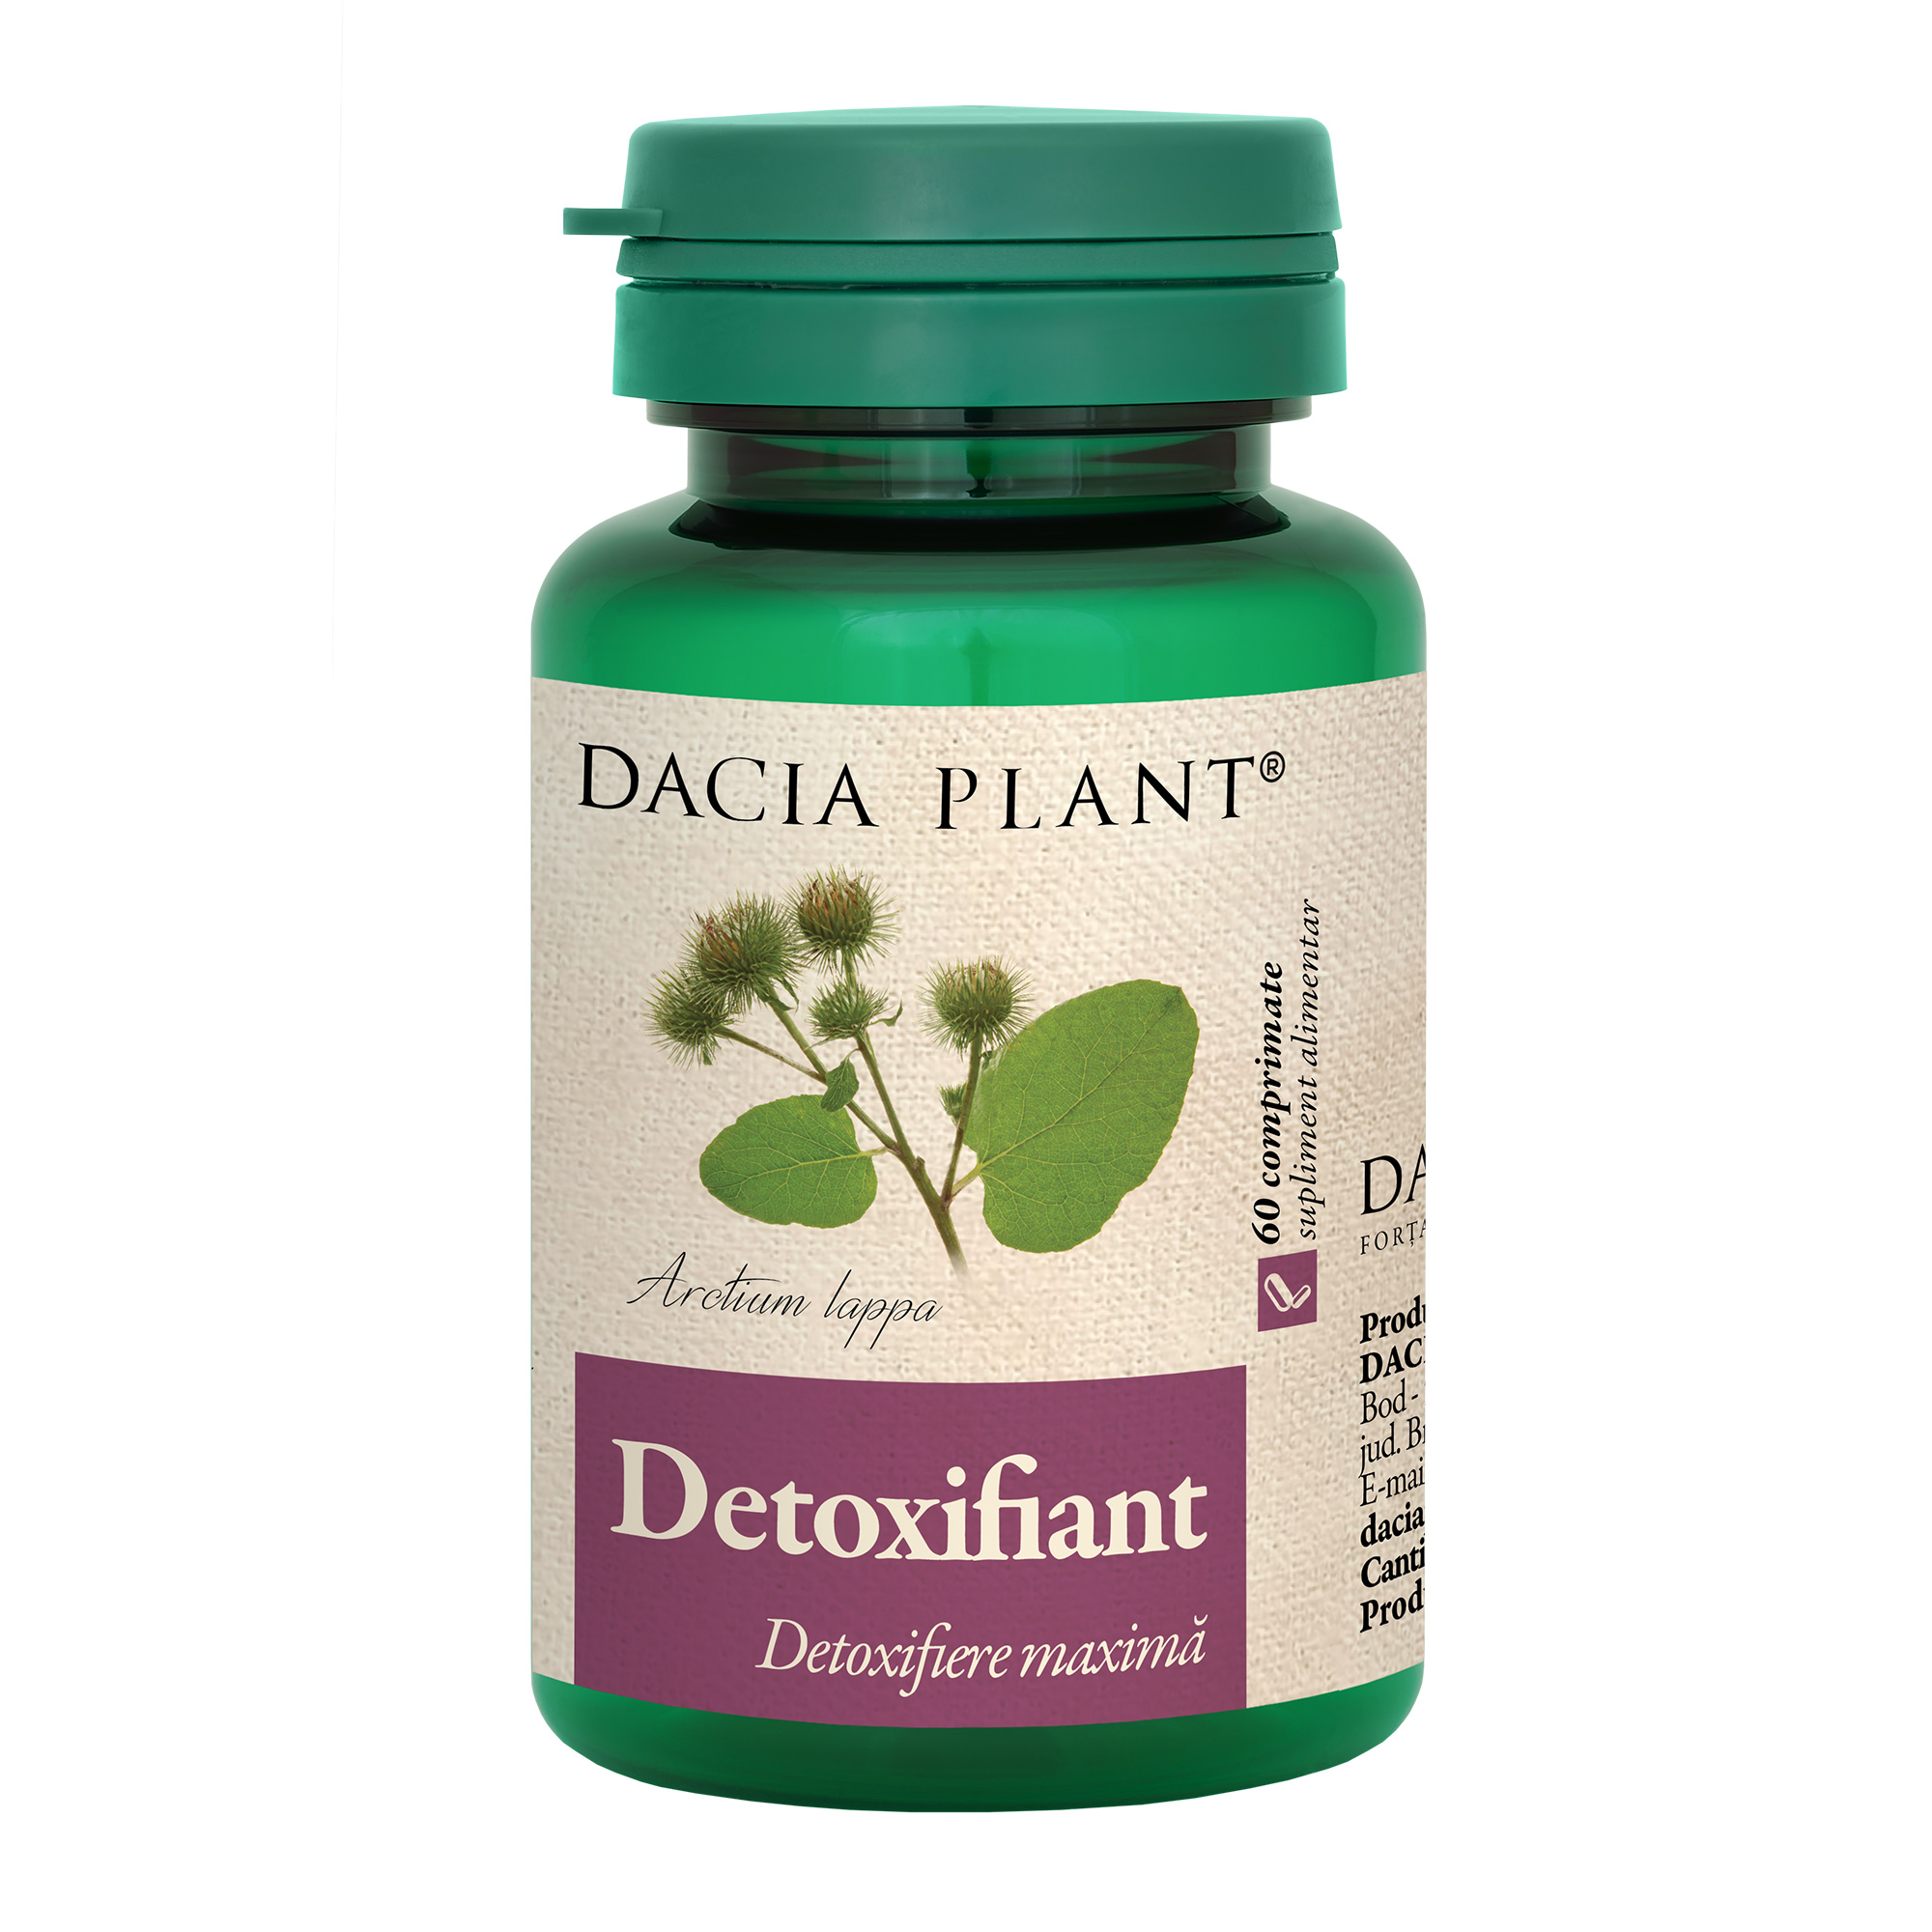 DETOXIFIERE - Detoxifiant, 60 comprimate, Dacia Plant, sinapis.ro